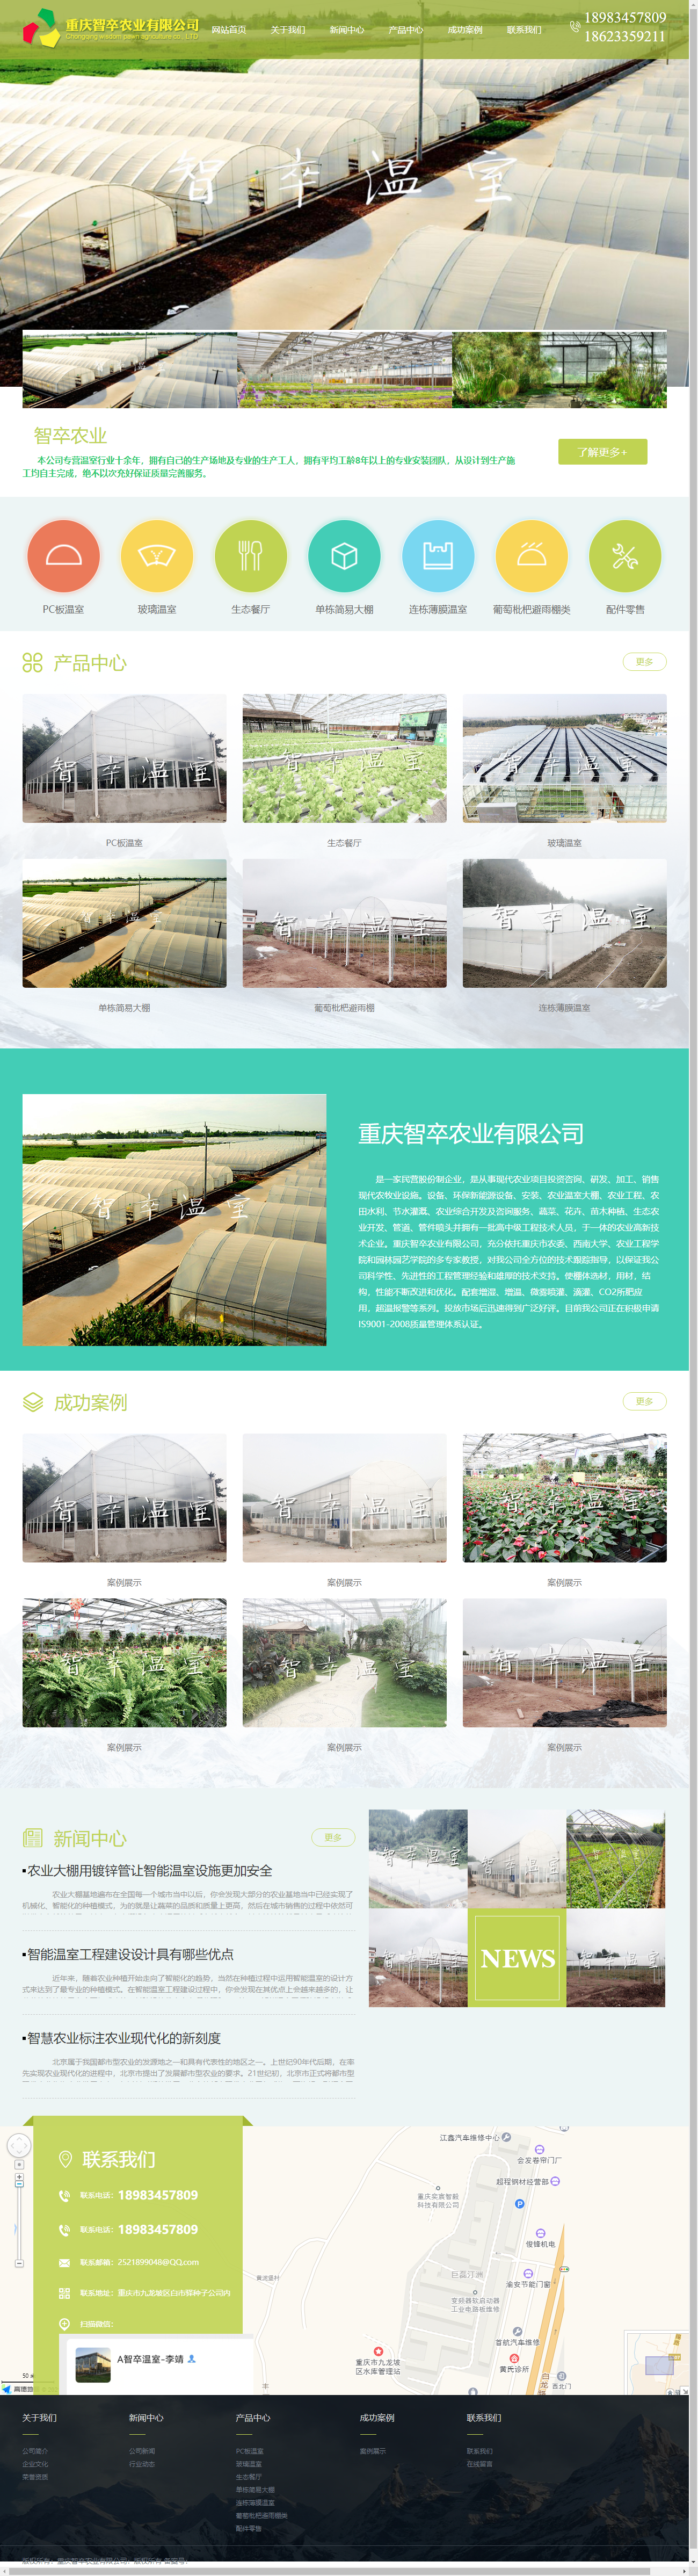 重庆智卒农业有限公司网站案例